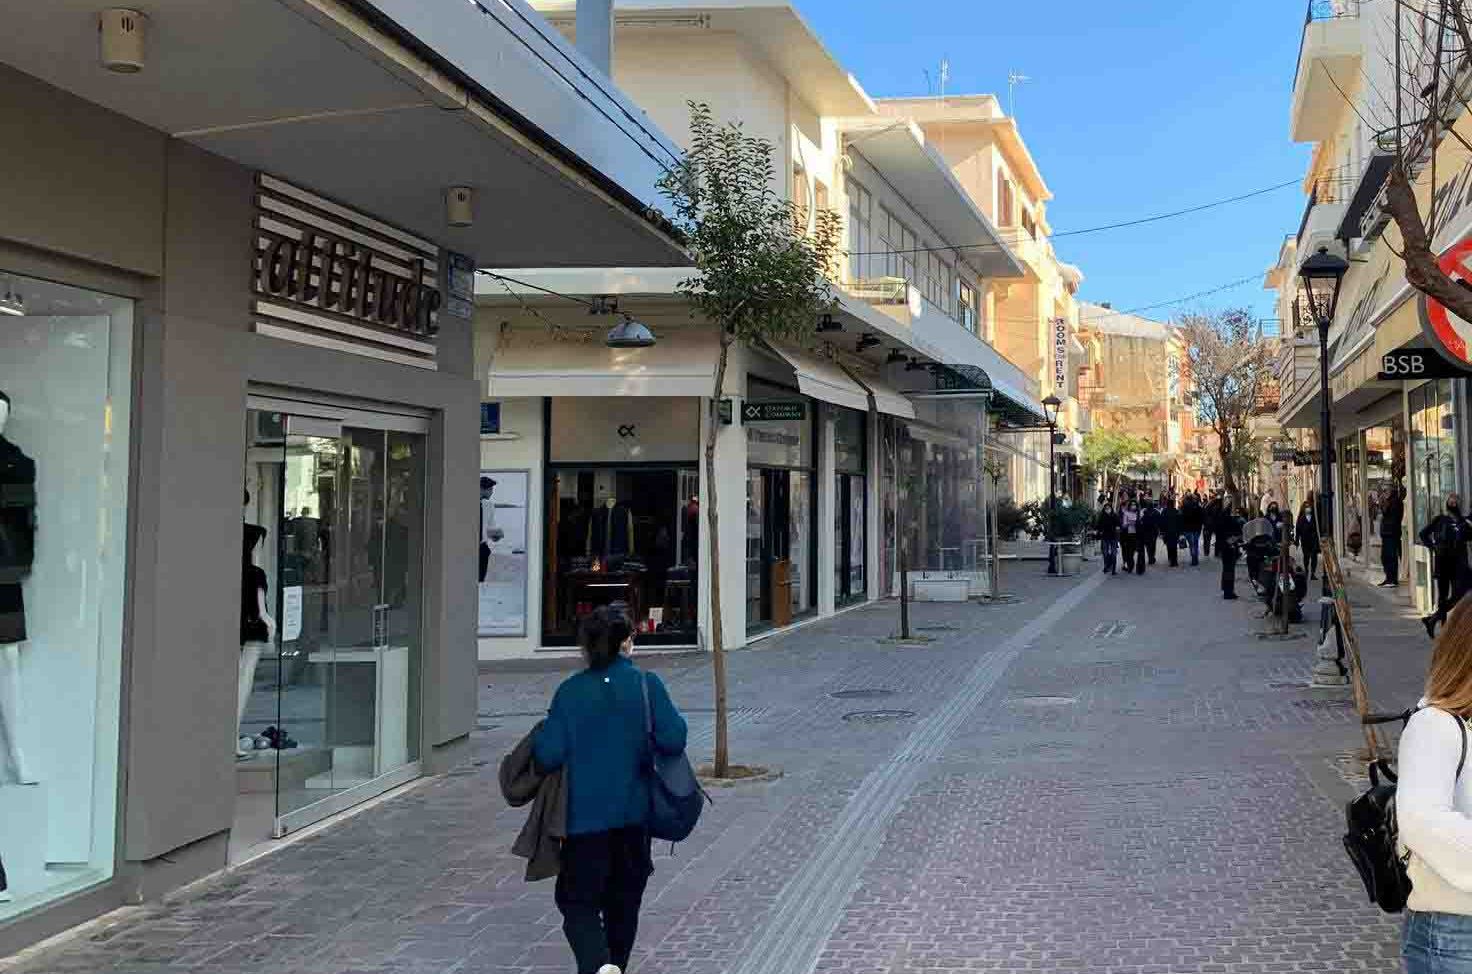 Σχεδόν πλήρης η κυριαρχία της βρετανικής μετάλλαξης στην Κρήτη